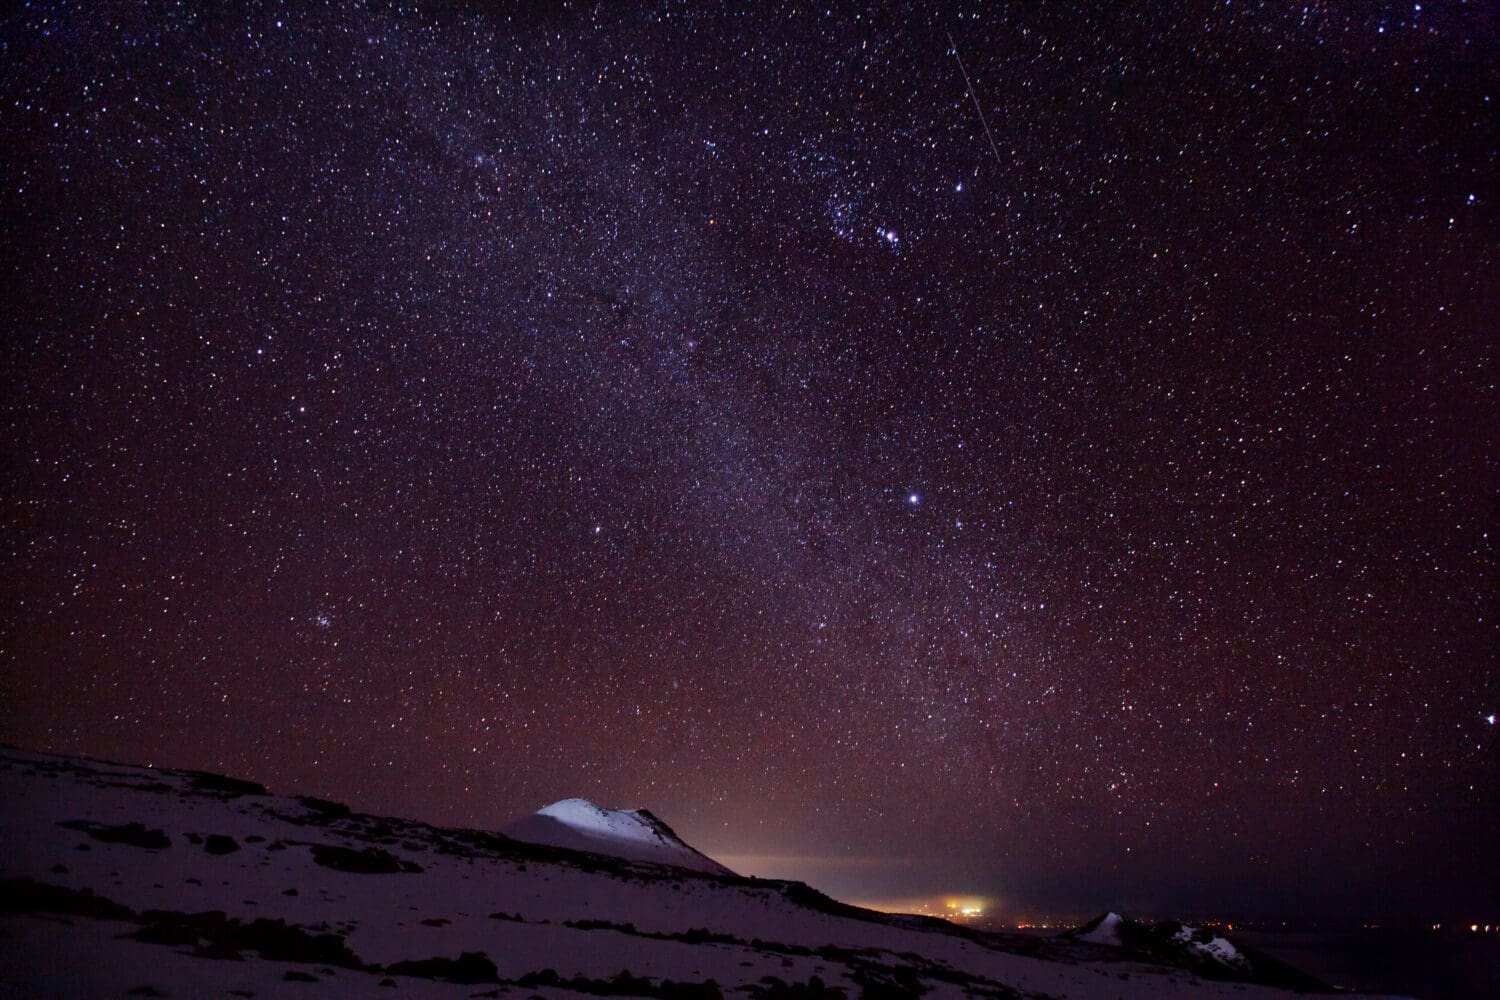 Milky Way Galaxy near Mauna Kea Summit (Big Island, Hawaii)